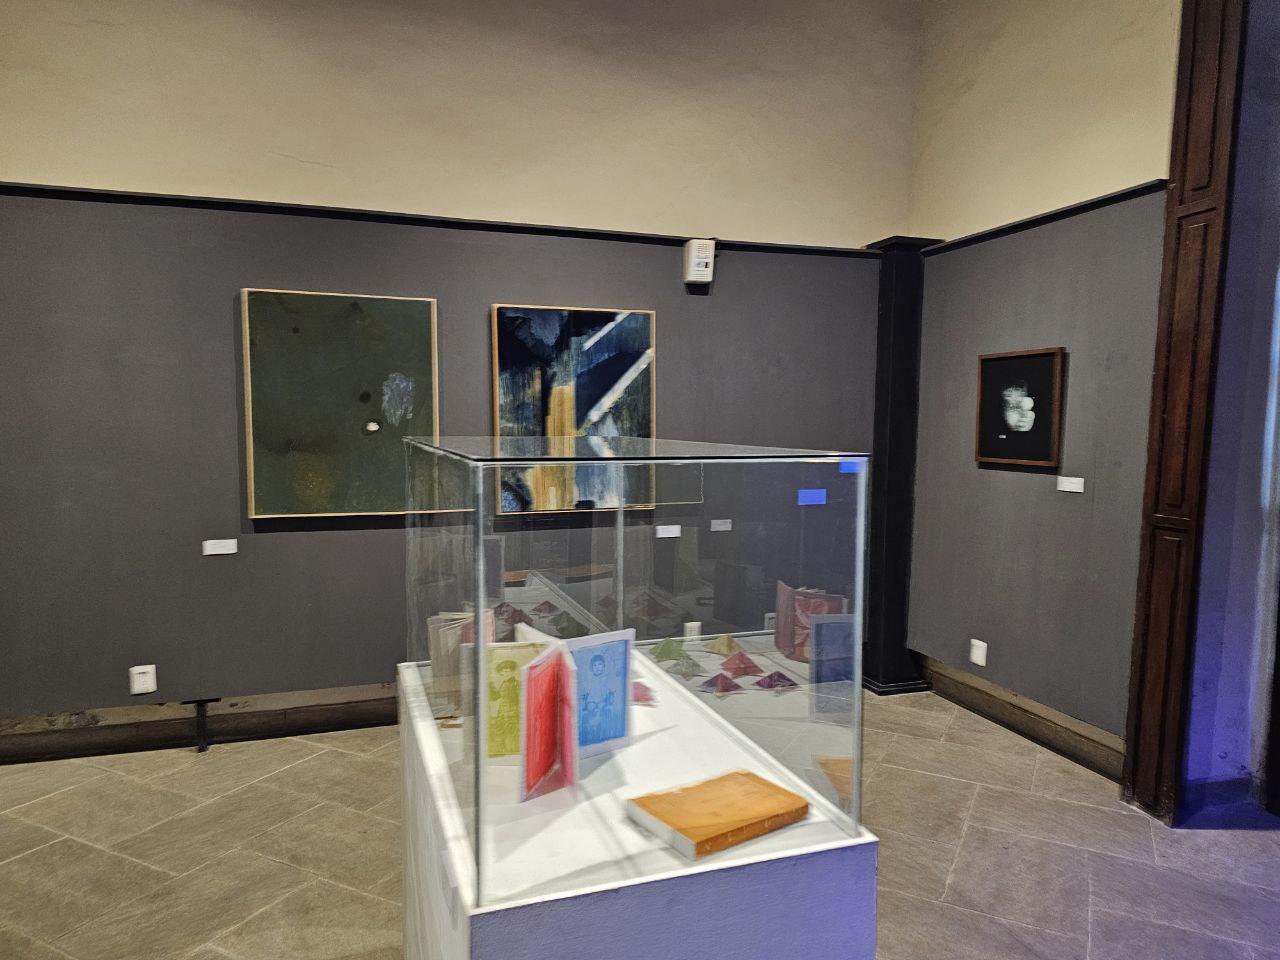 Se inauguró en el Centro Queretano de la Imagen la exposición Lux Fenestra. En el Centro Queretano de la Imagen (CQI) se inauguró la exposición